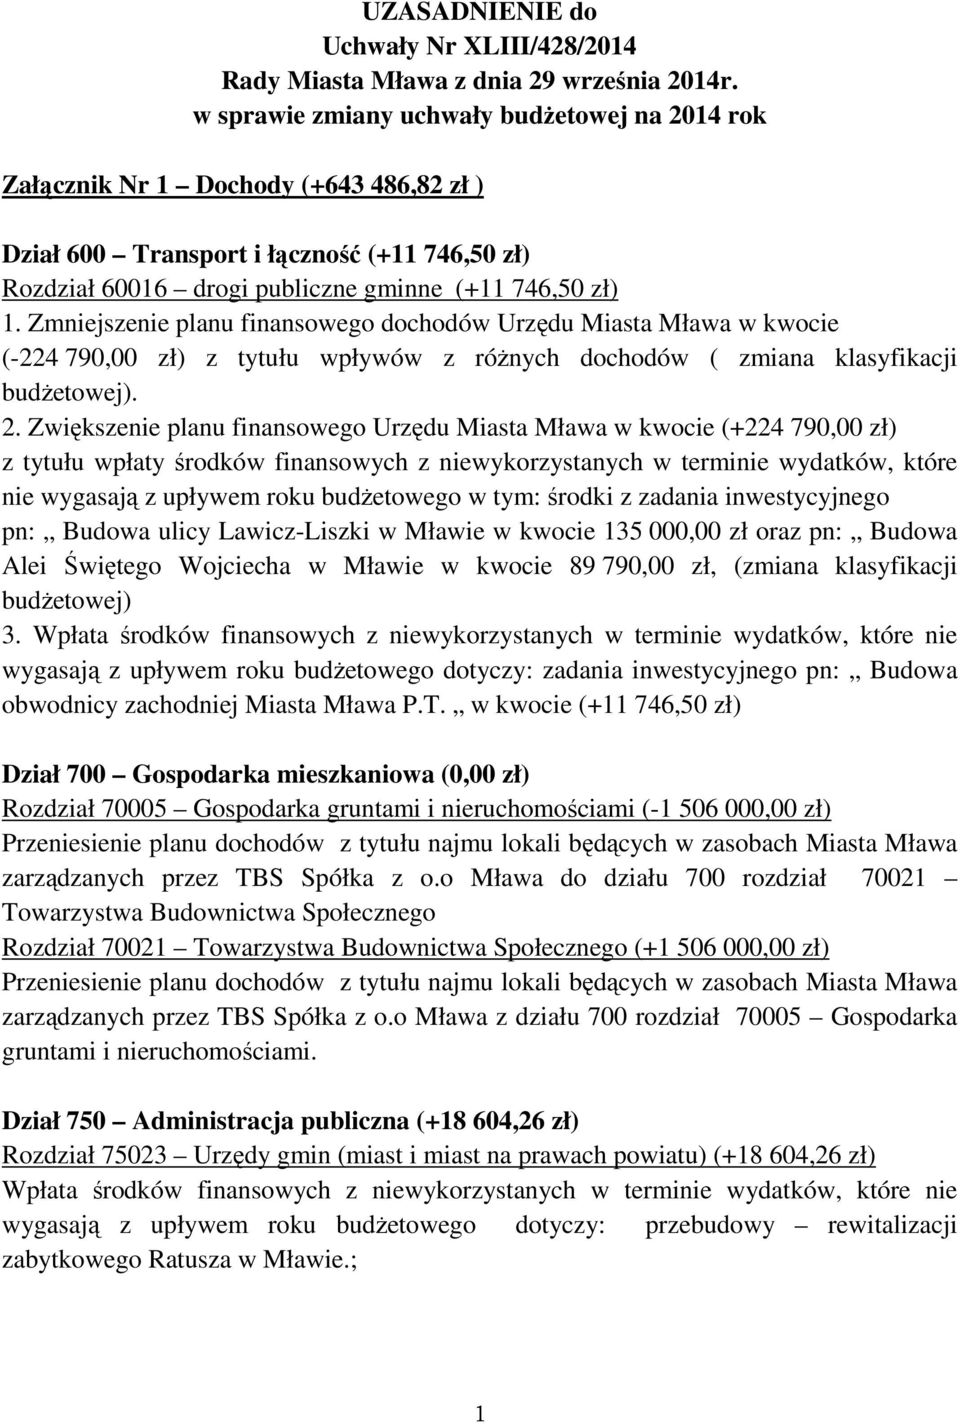 Zmniejszenie planu finansowego dochodów Urzędu Miasta Mława w kwocie (-224 790,00 zł) z tytułu wpływów z różnych dochodów ( zmiana klasyfikacji budżetowej). 2.